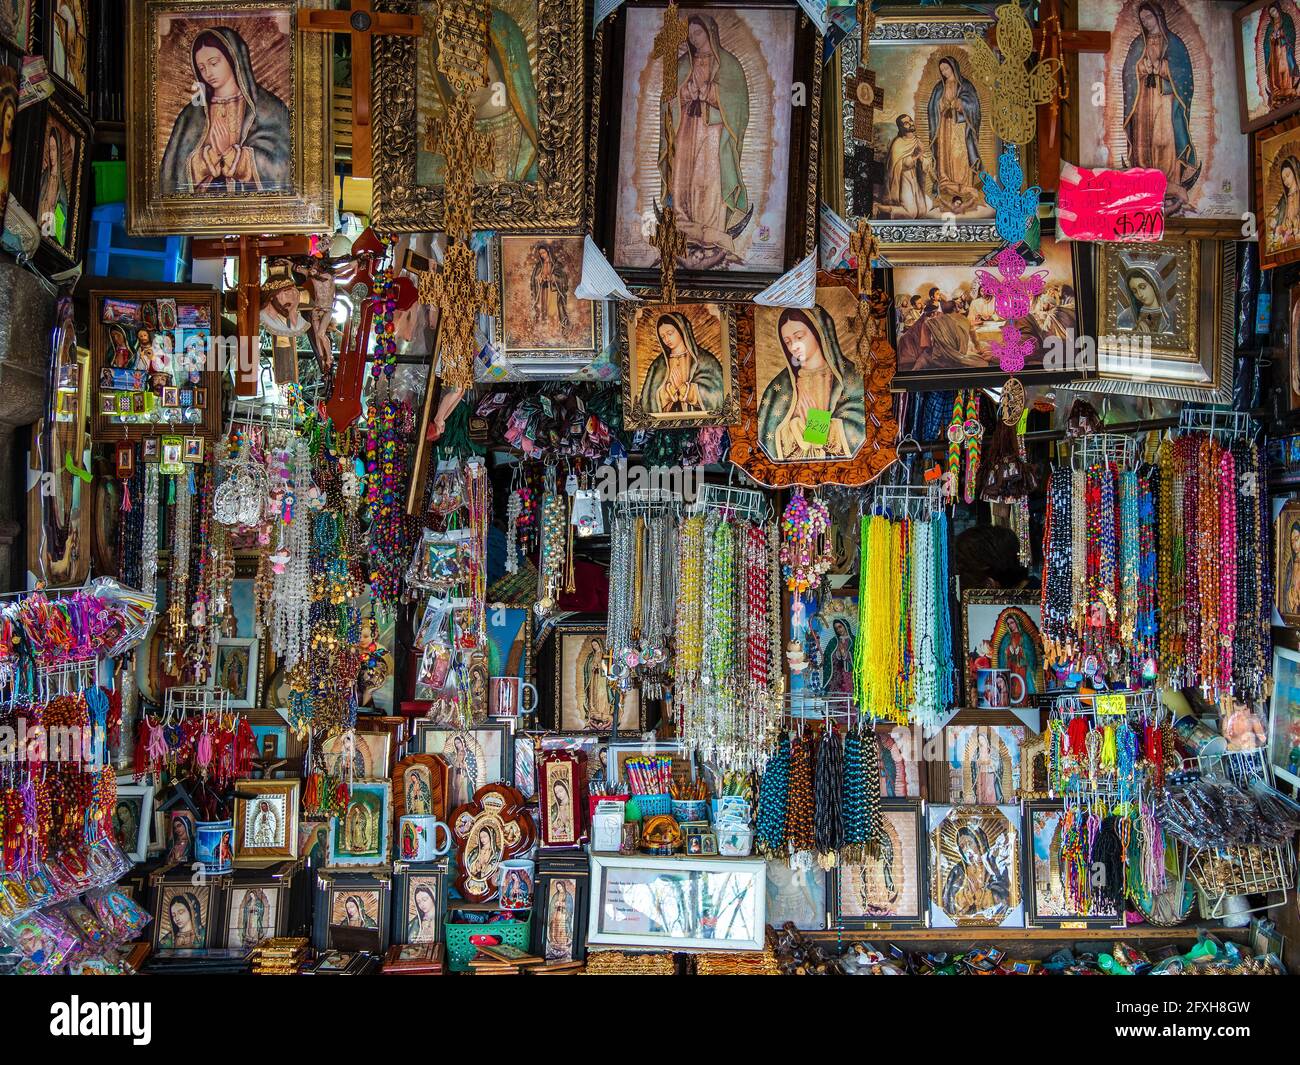 Souvenirladen, der religiöse Gegenstände vor der berühmten Basilika unserer Lieben Frau von Guadalupe in Mexiko-Stadt, Mexiko, verkauft. Stockfoto